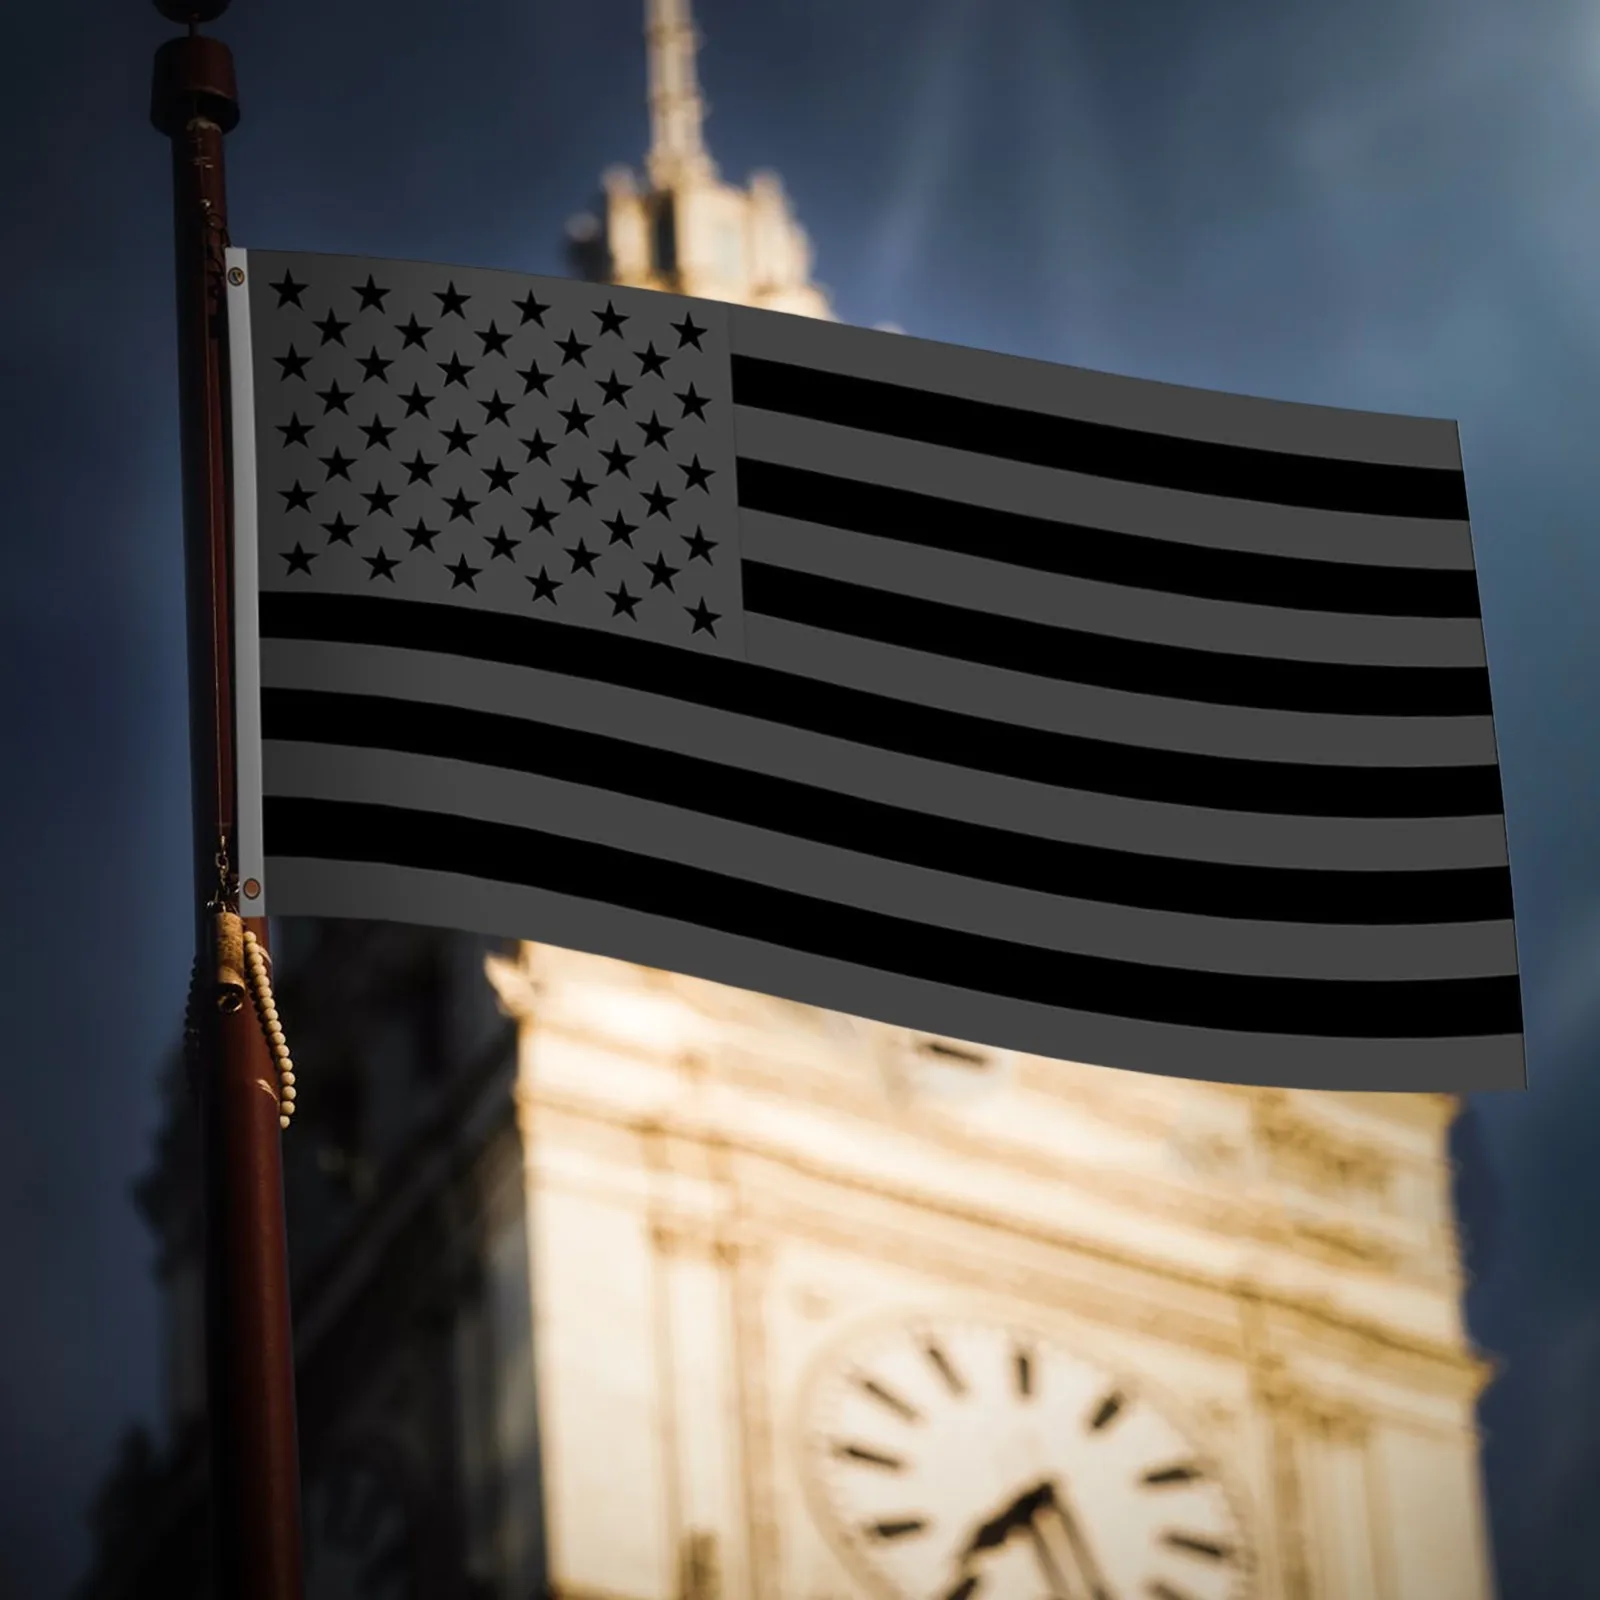 

2 шт. полностью черный американский флаг 3x5 футов, Холщовый наконечник и двойная прострочка-черный флаг США полиэстер с латунными прокладкам...